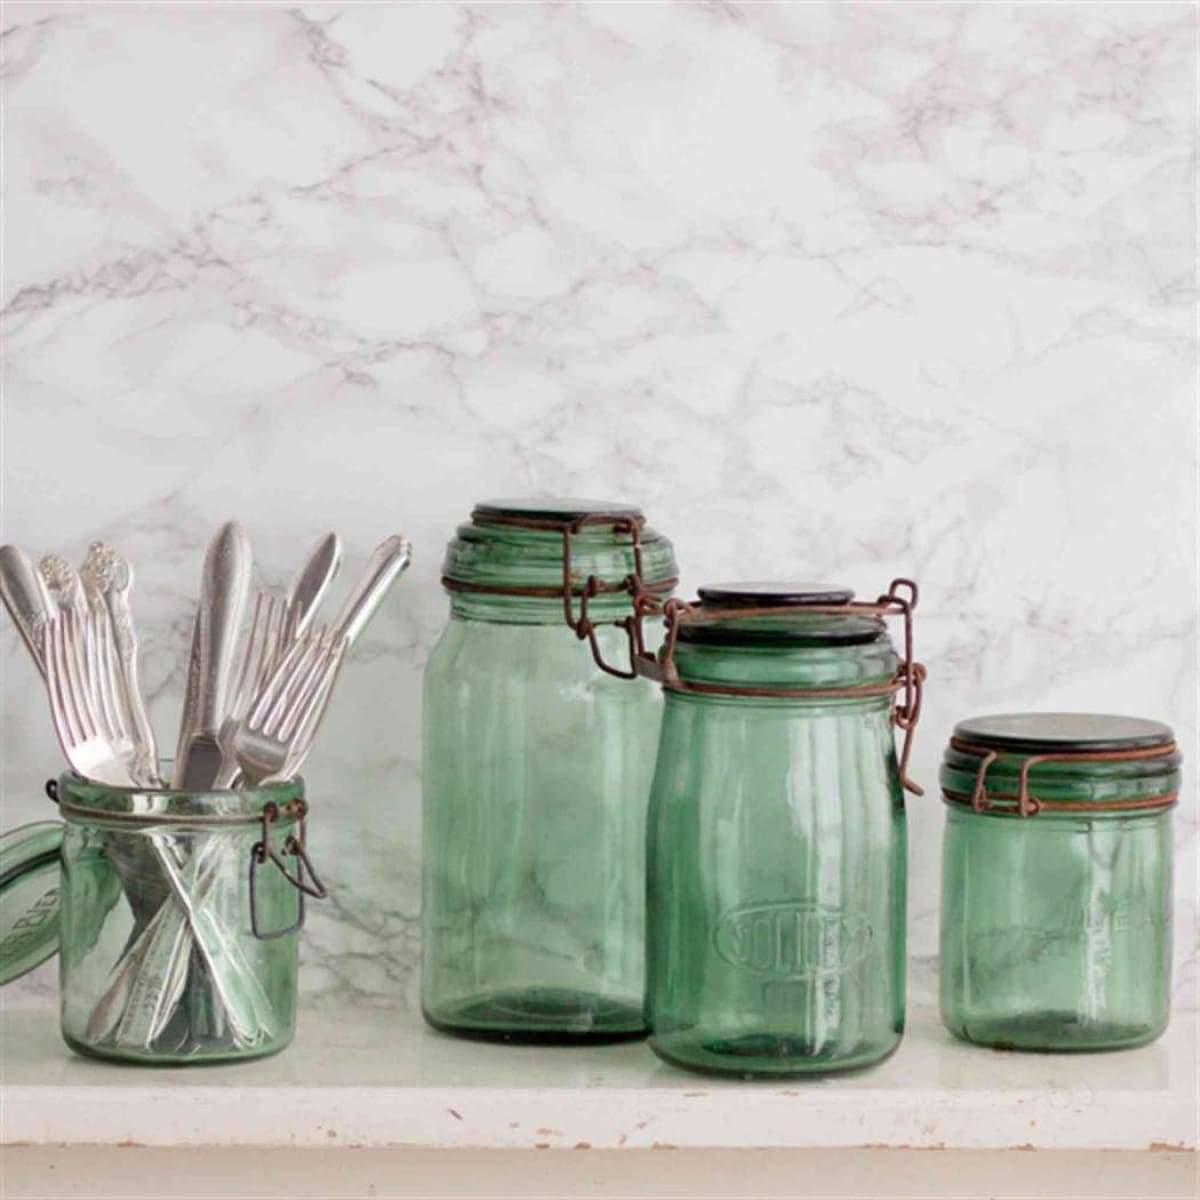 https://elsiegreen.com/cdn/shop/products/vintage-canning-jar-ball-jars-bottle-bottles-food-storage-containers_841.jpg?v=1637943834